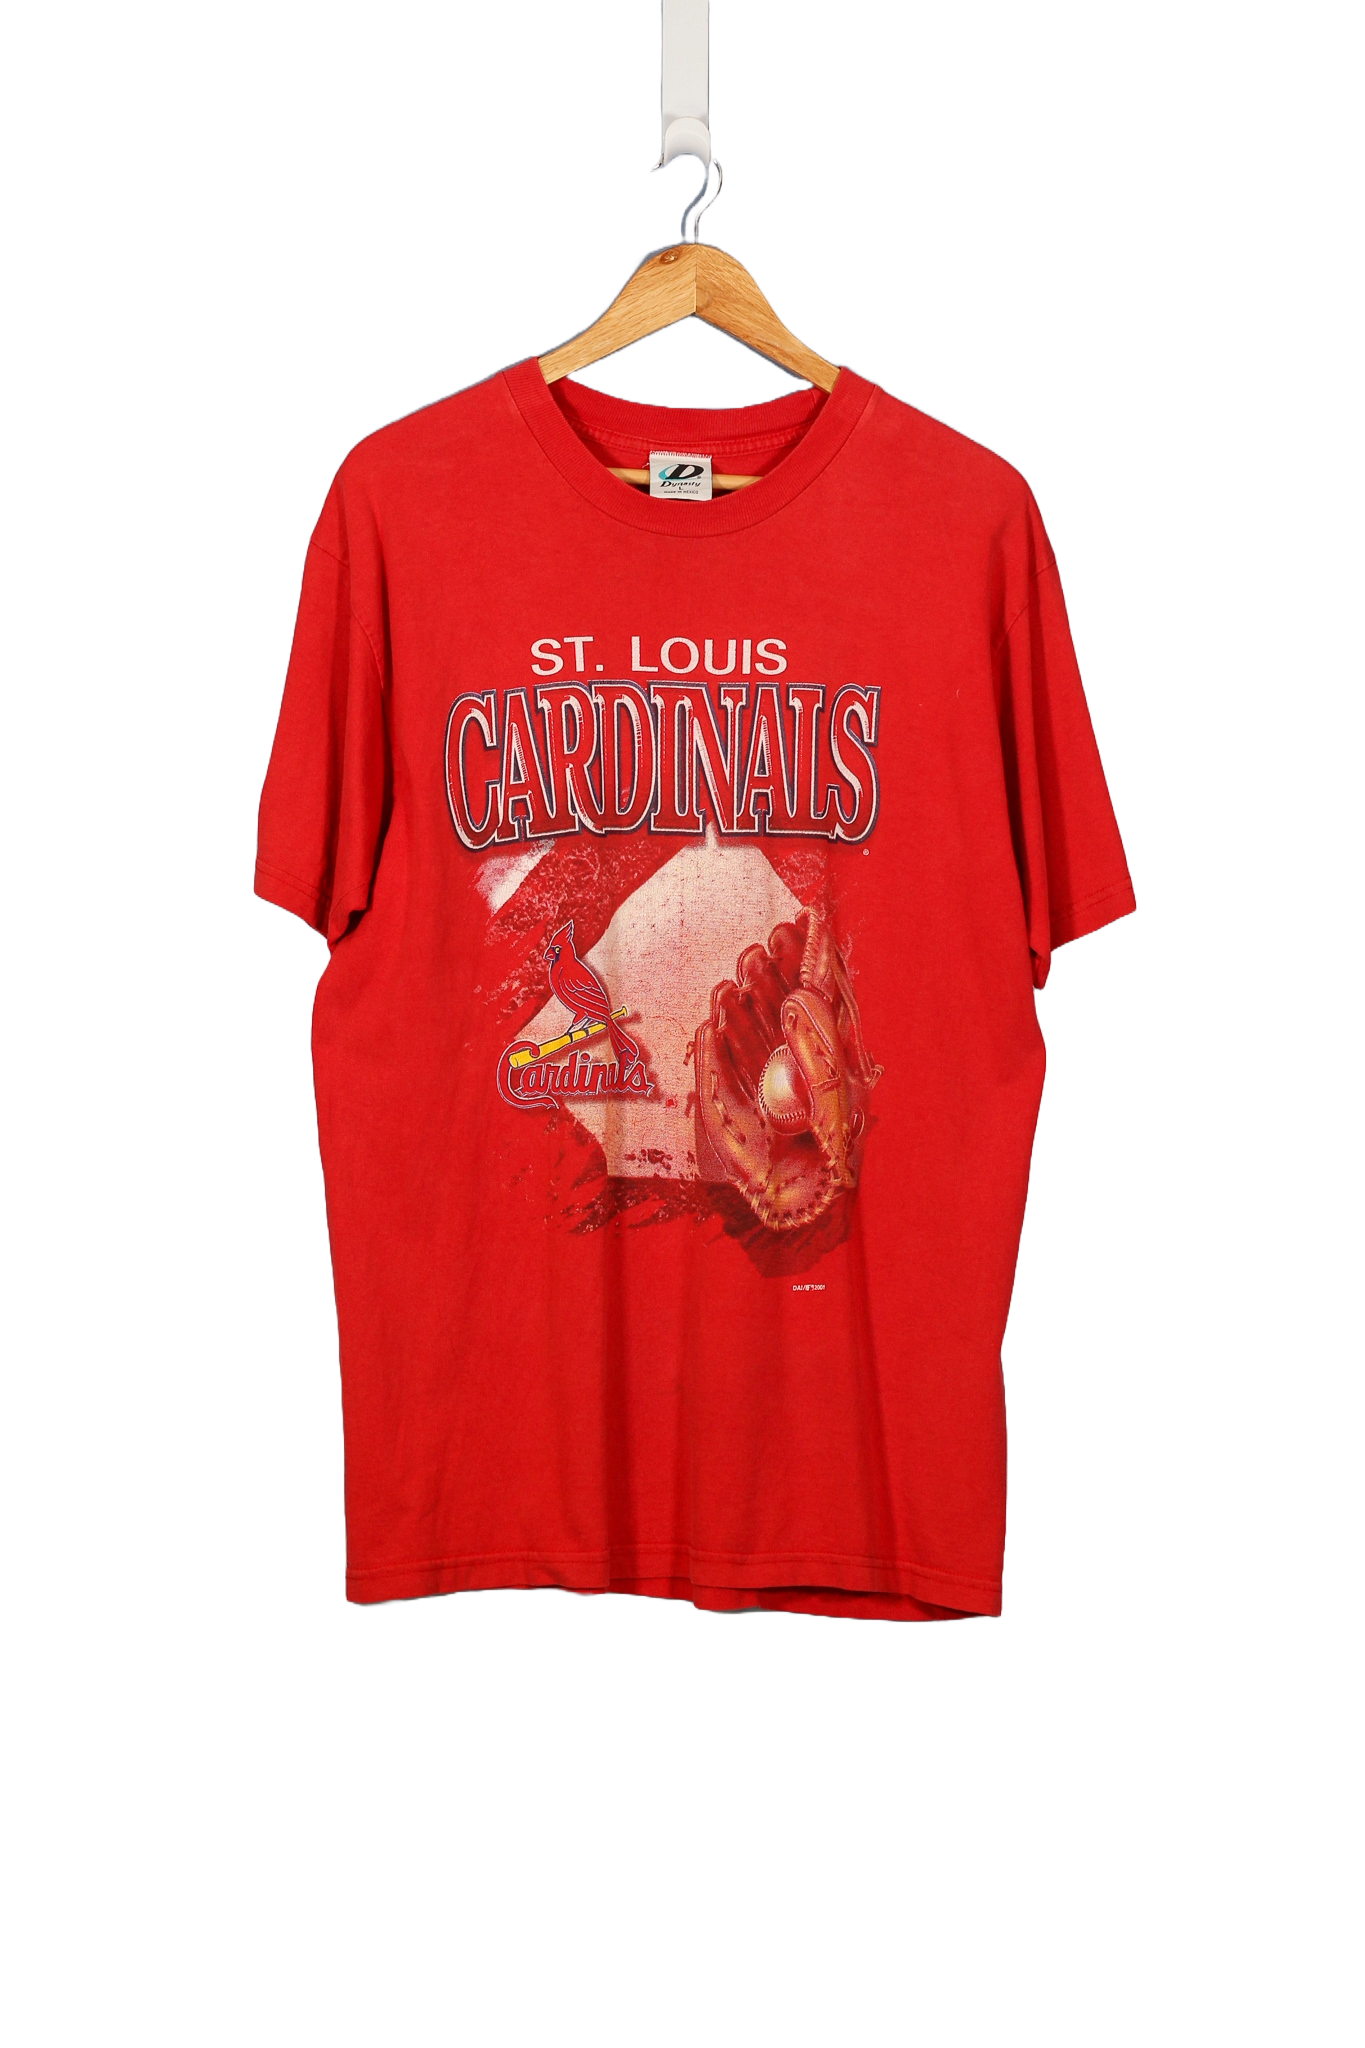 Vintage St. Louis Cardinals MLB T-Shirt - L